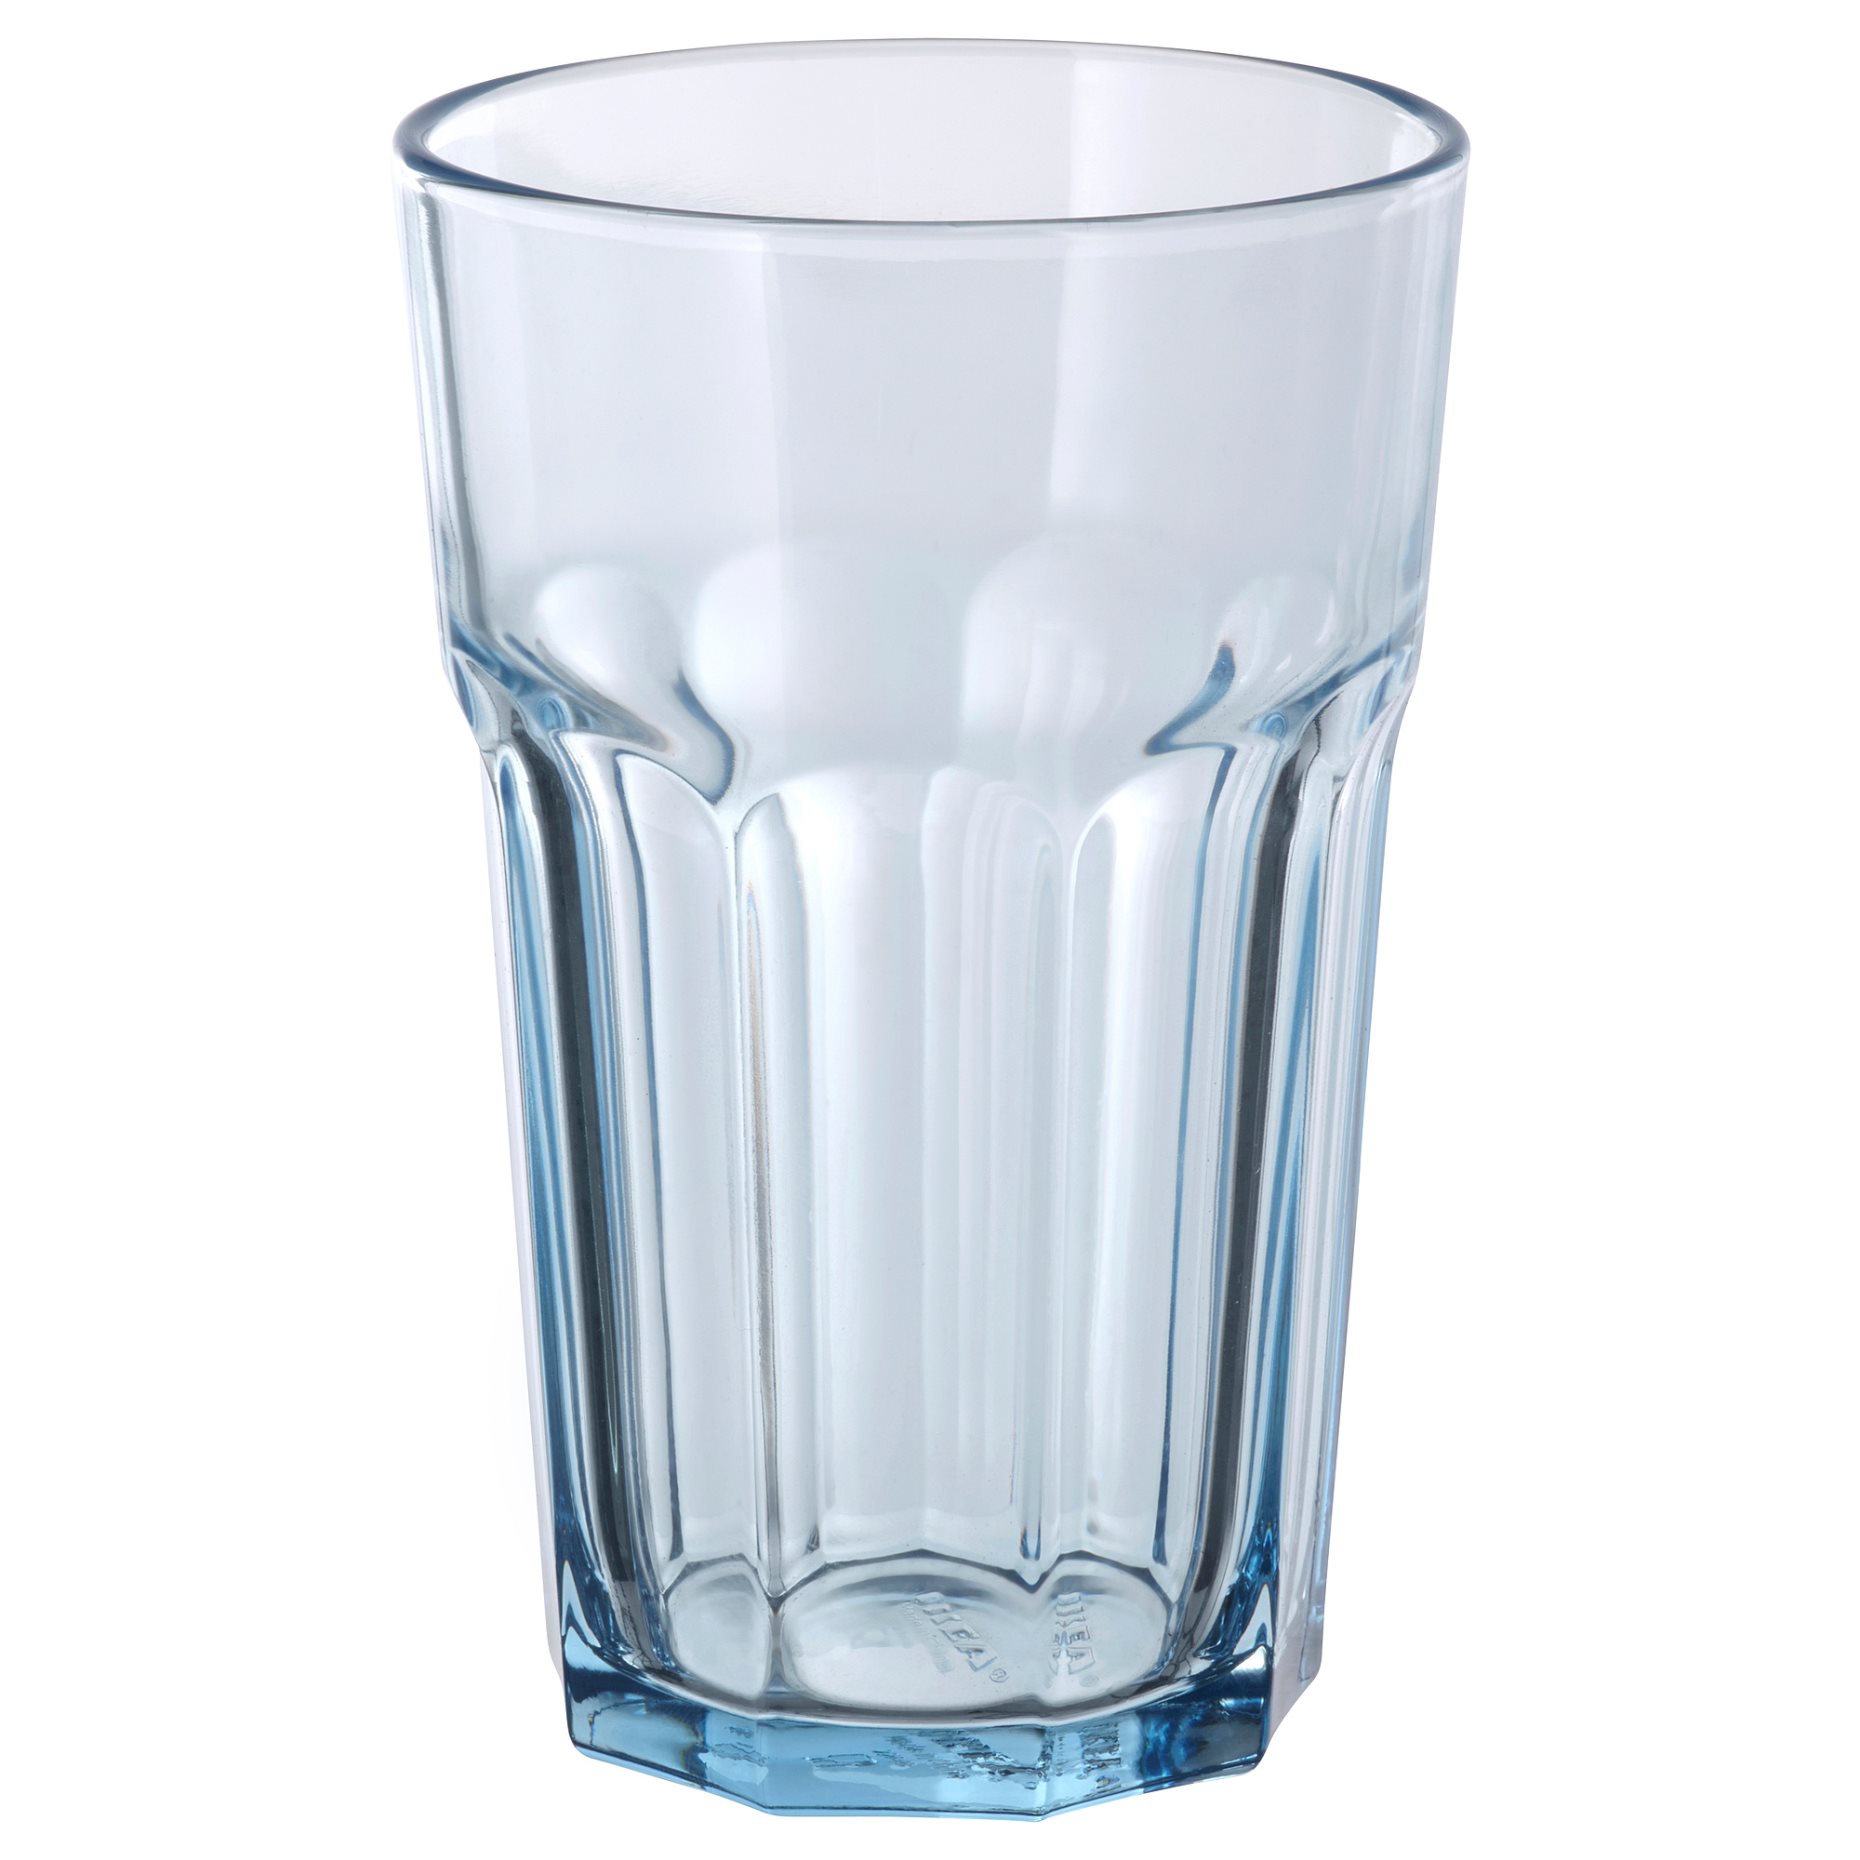 POKAL, glass, 35 cl, 205.740.16